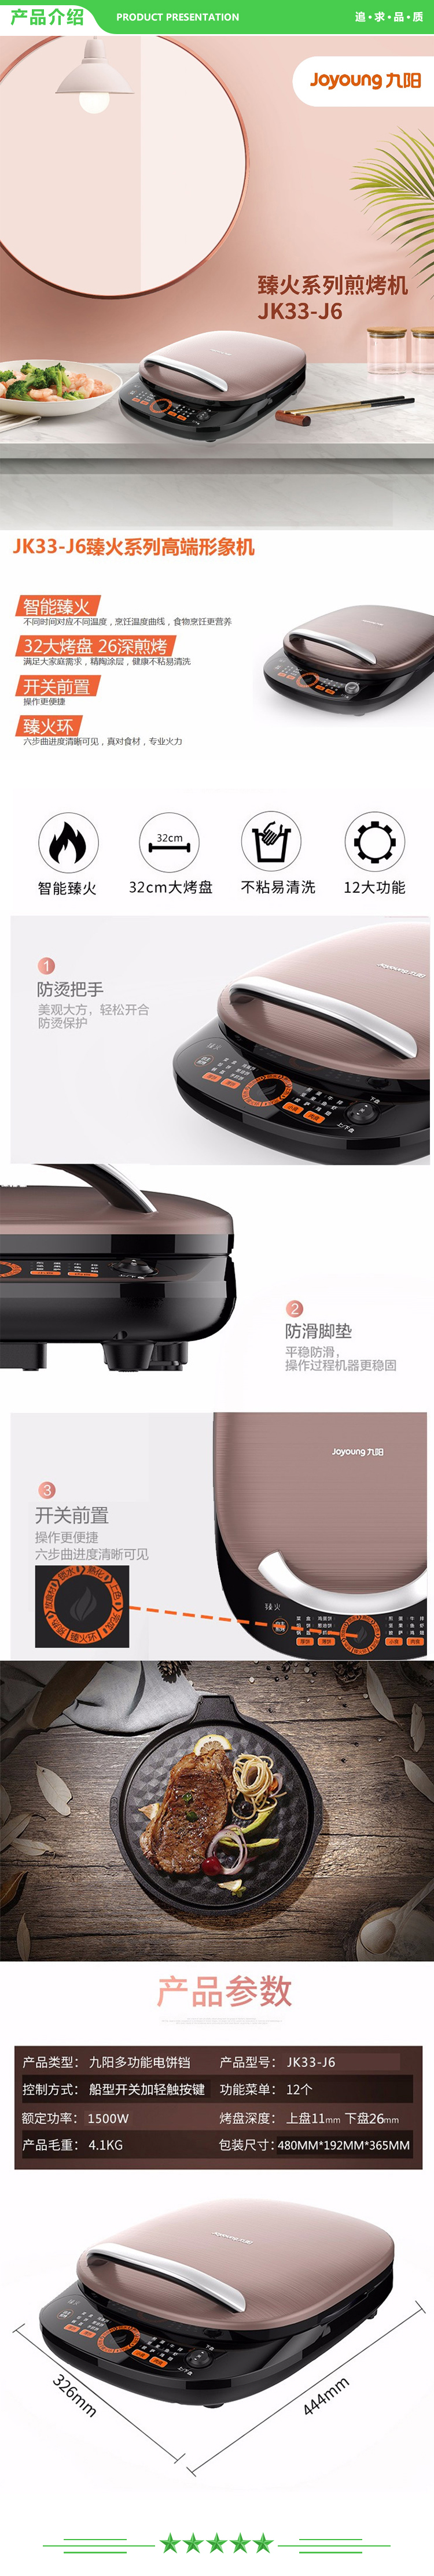 九阳 Joyoung JK33-J6 电饼铛 家用多功能煎烤机烙饼机双面独立加热 摩卡金色.jpg